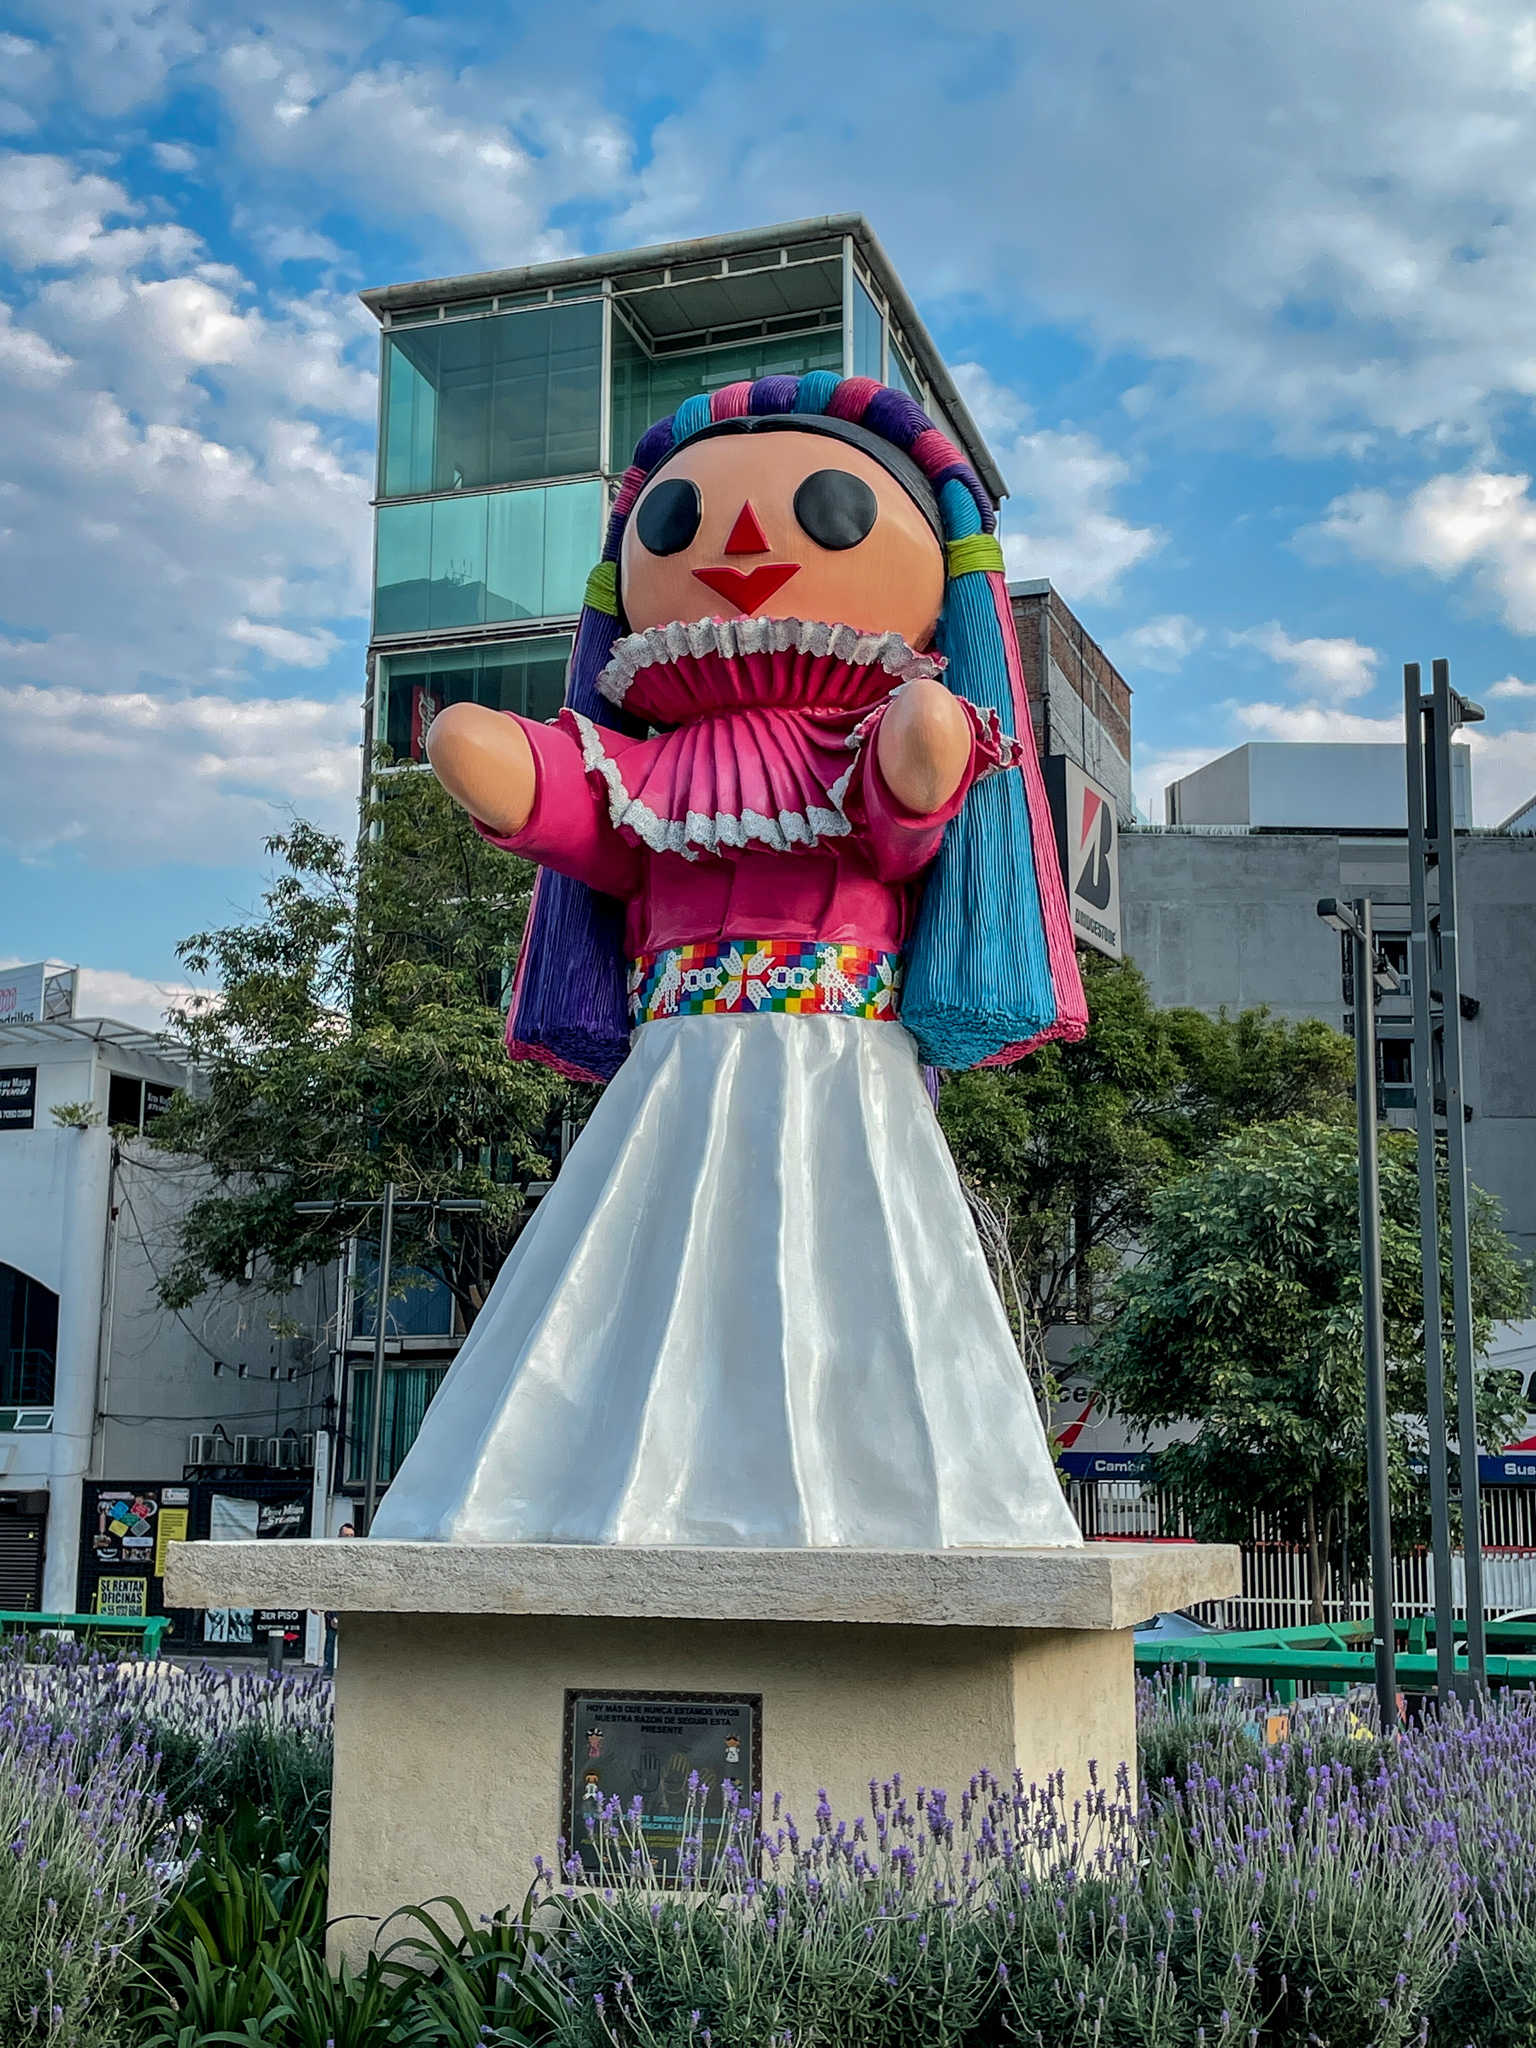 Muneca Doll Statue Mexico City CDMX